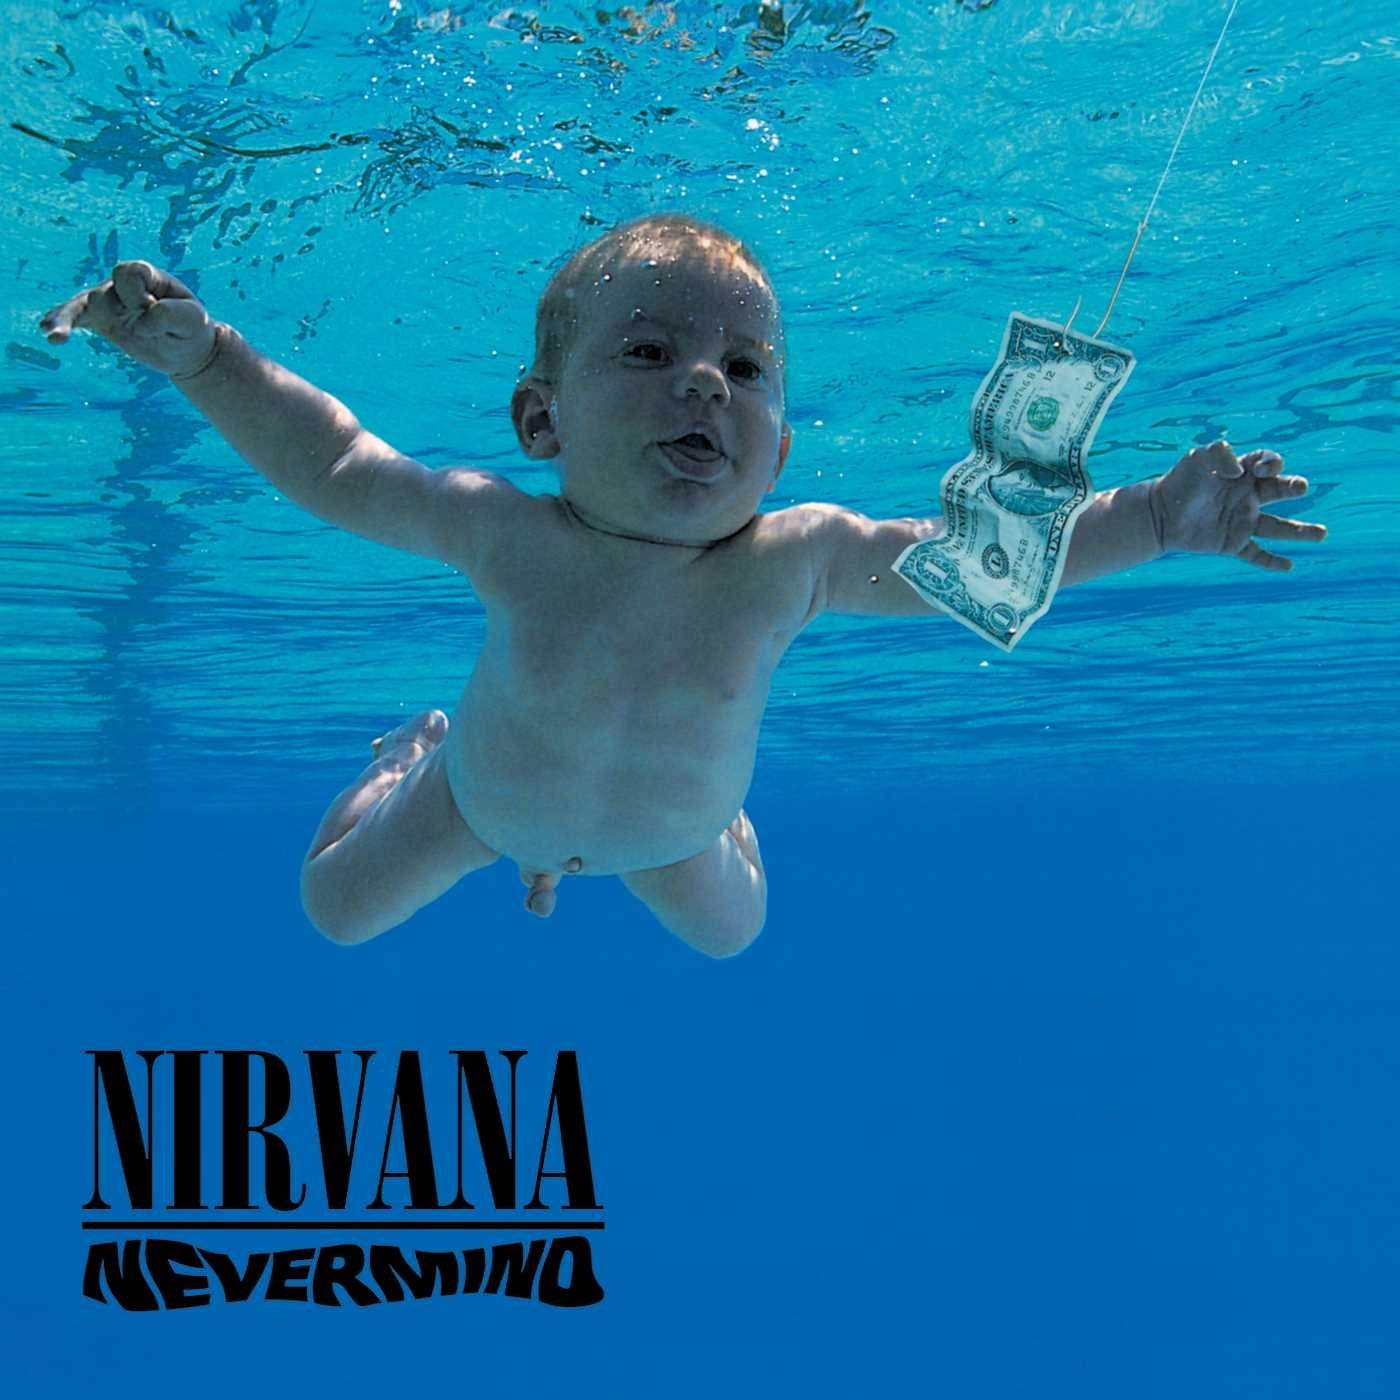 Nirvana - ‘Nevermind’ - Released September 24, 1991.